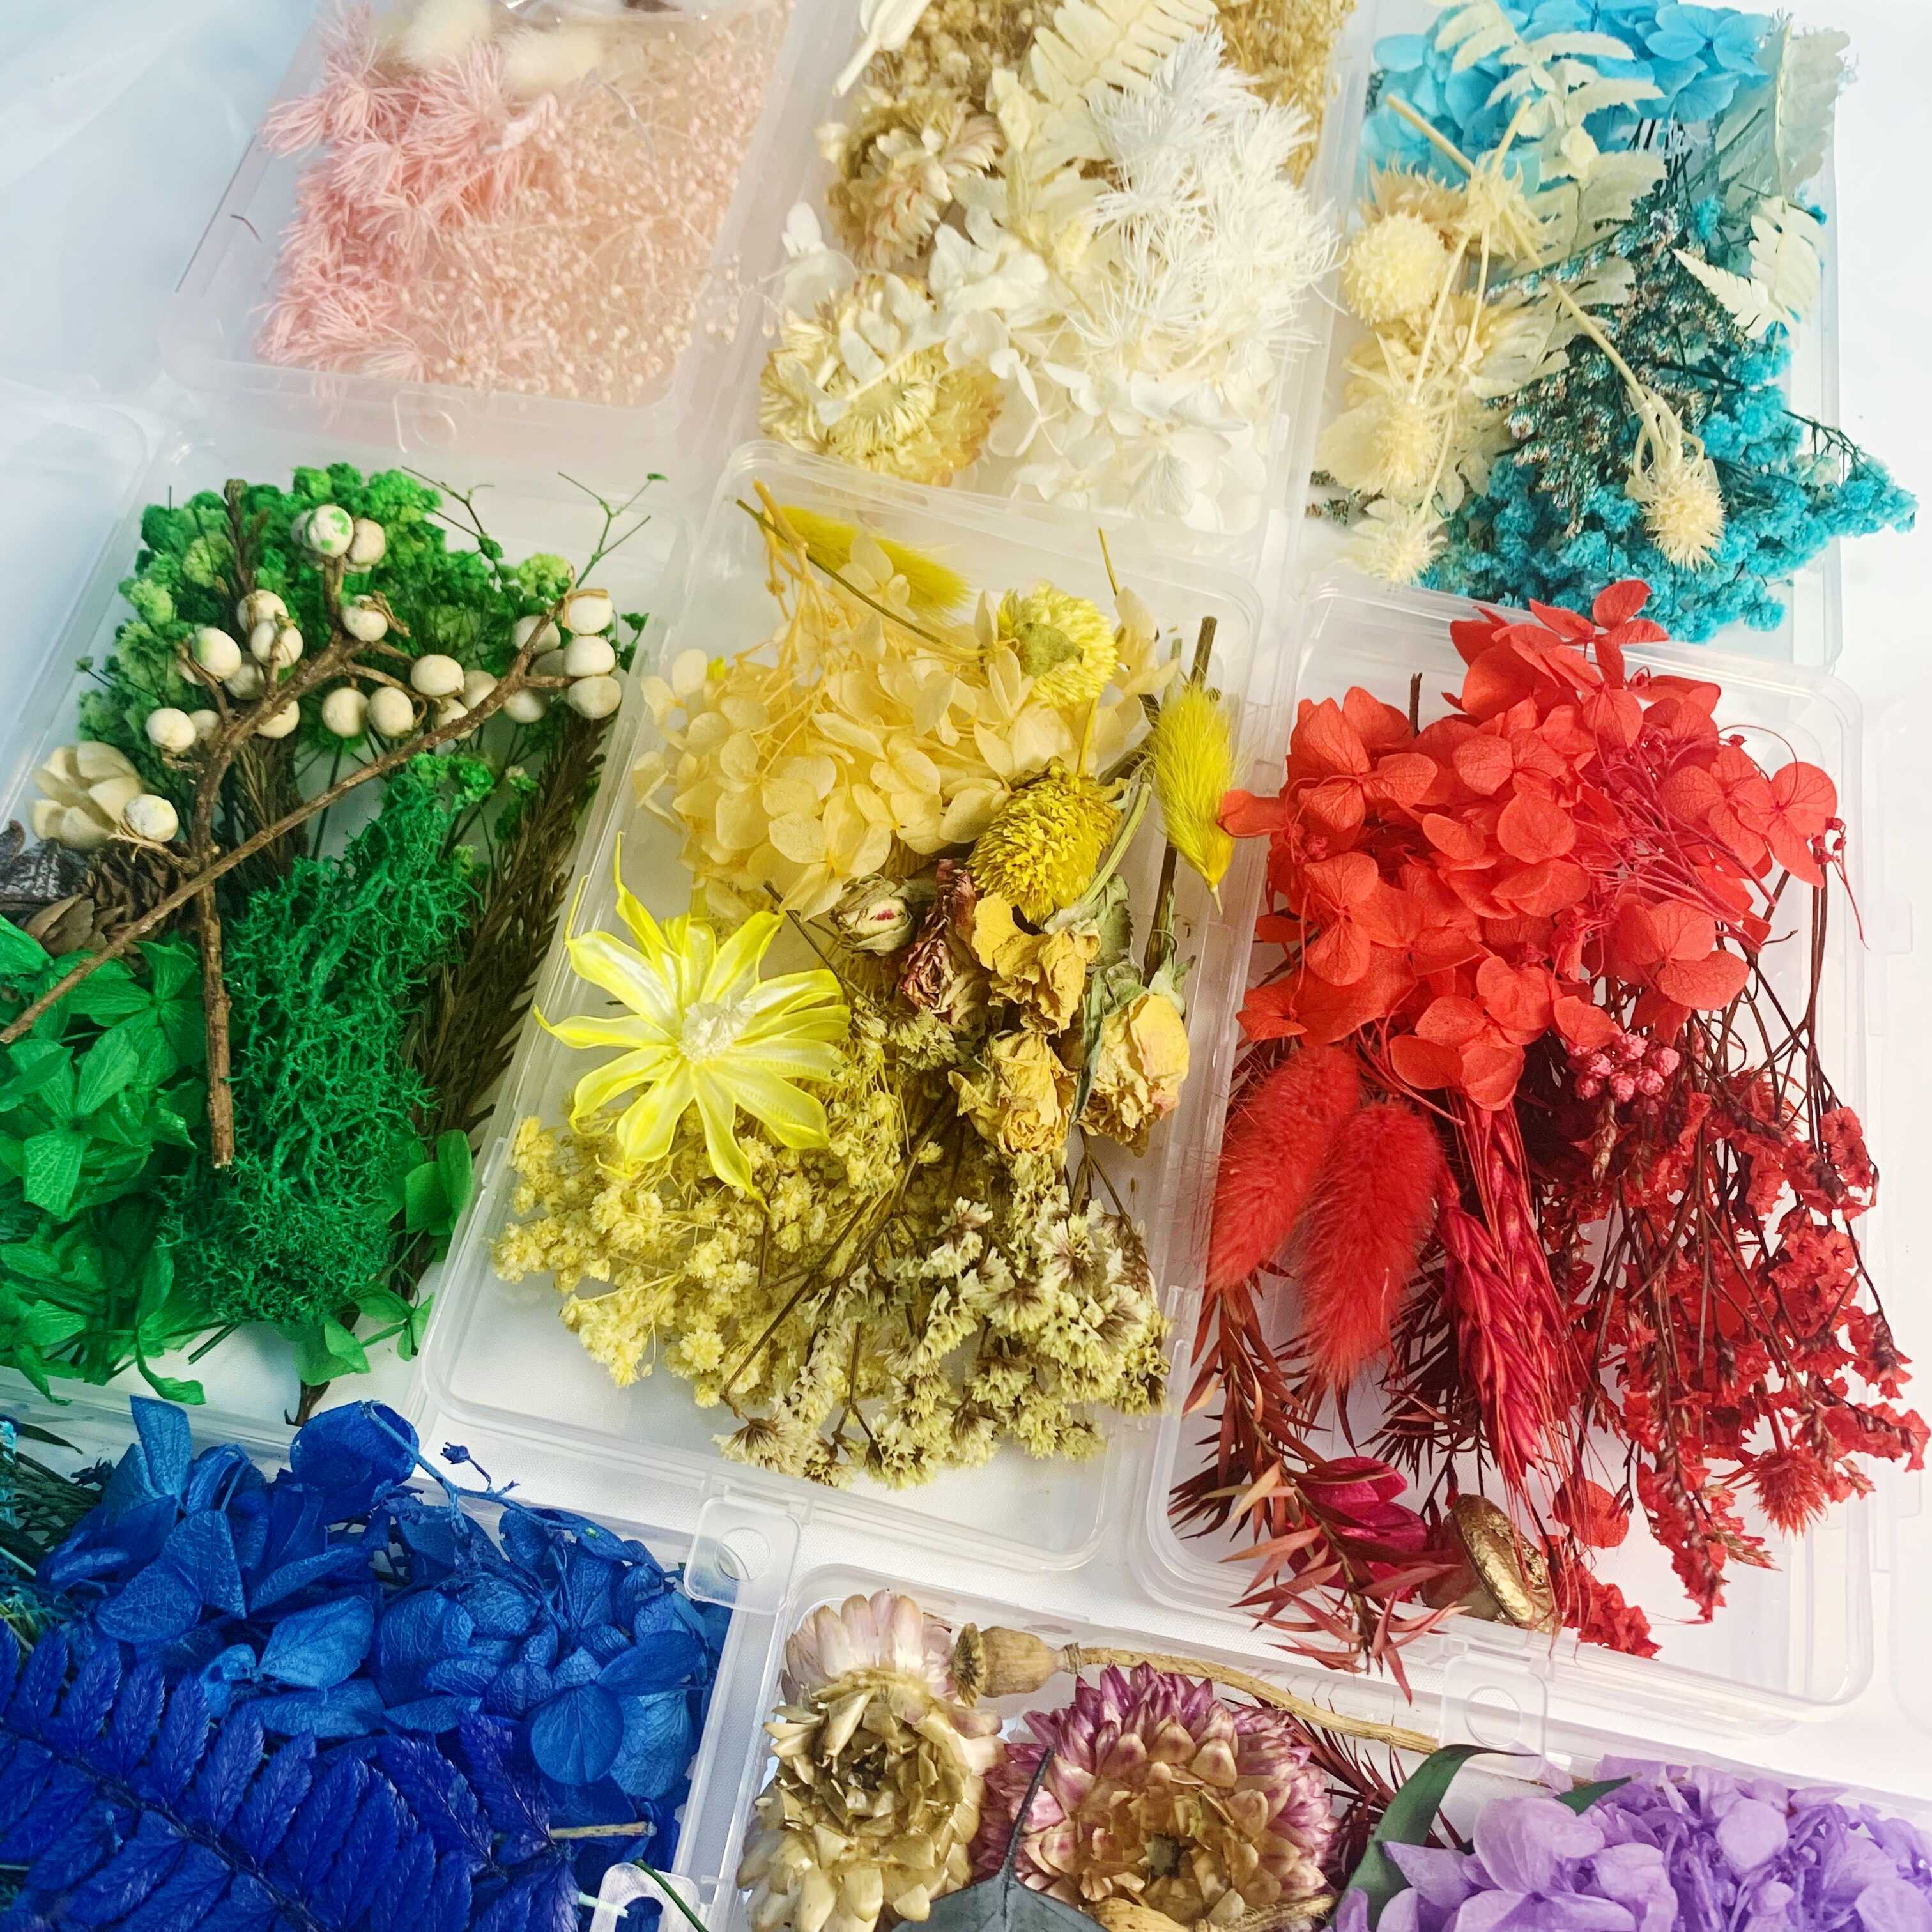  1 caja de flores secas plantas secas para rellenos de resina,  colgante de resina epoxi, collar, fabricación de joyas, manualidades,  decoración de uñas : Arte y Manualidades